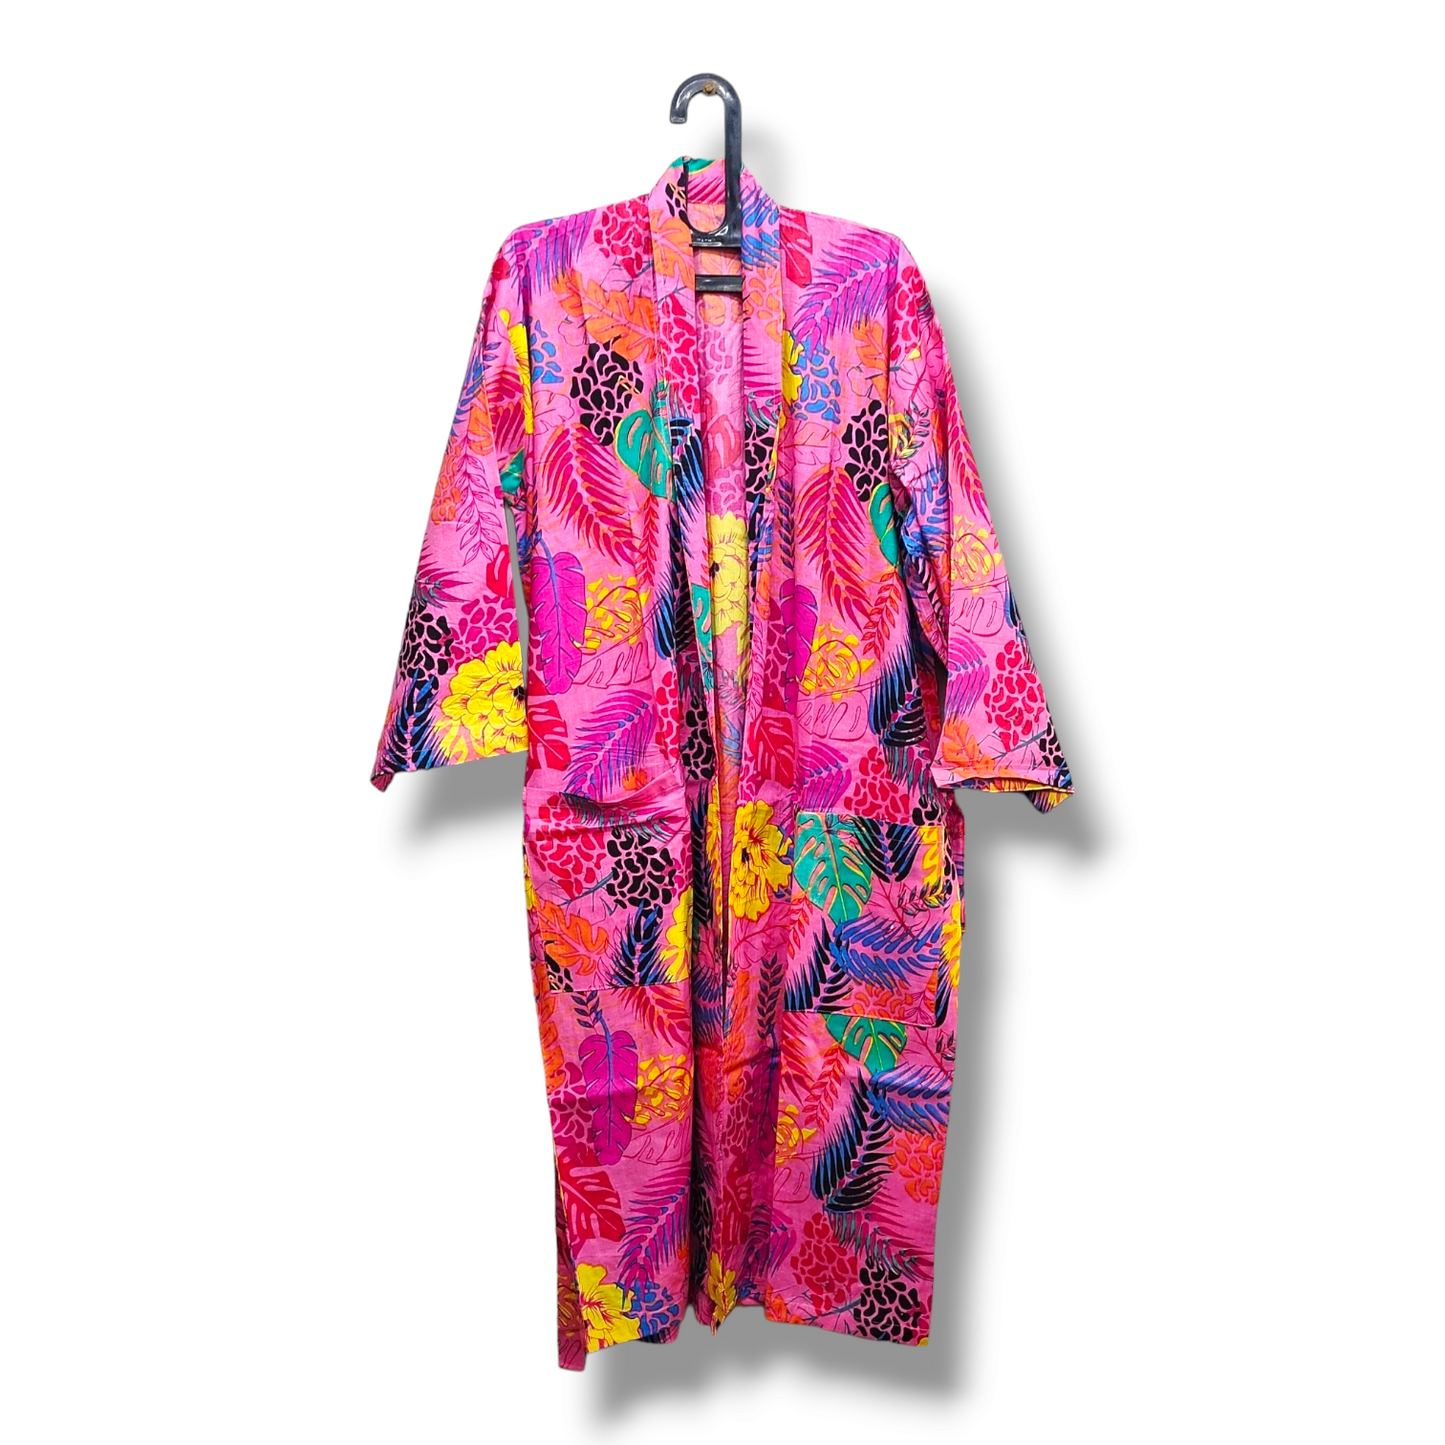 Cotton Hand Printed Kimono Robe Neon Pink